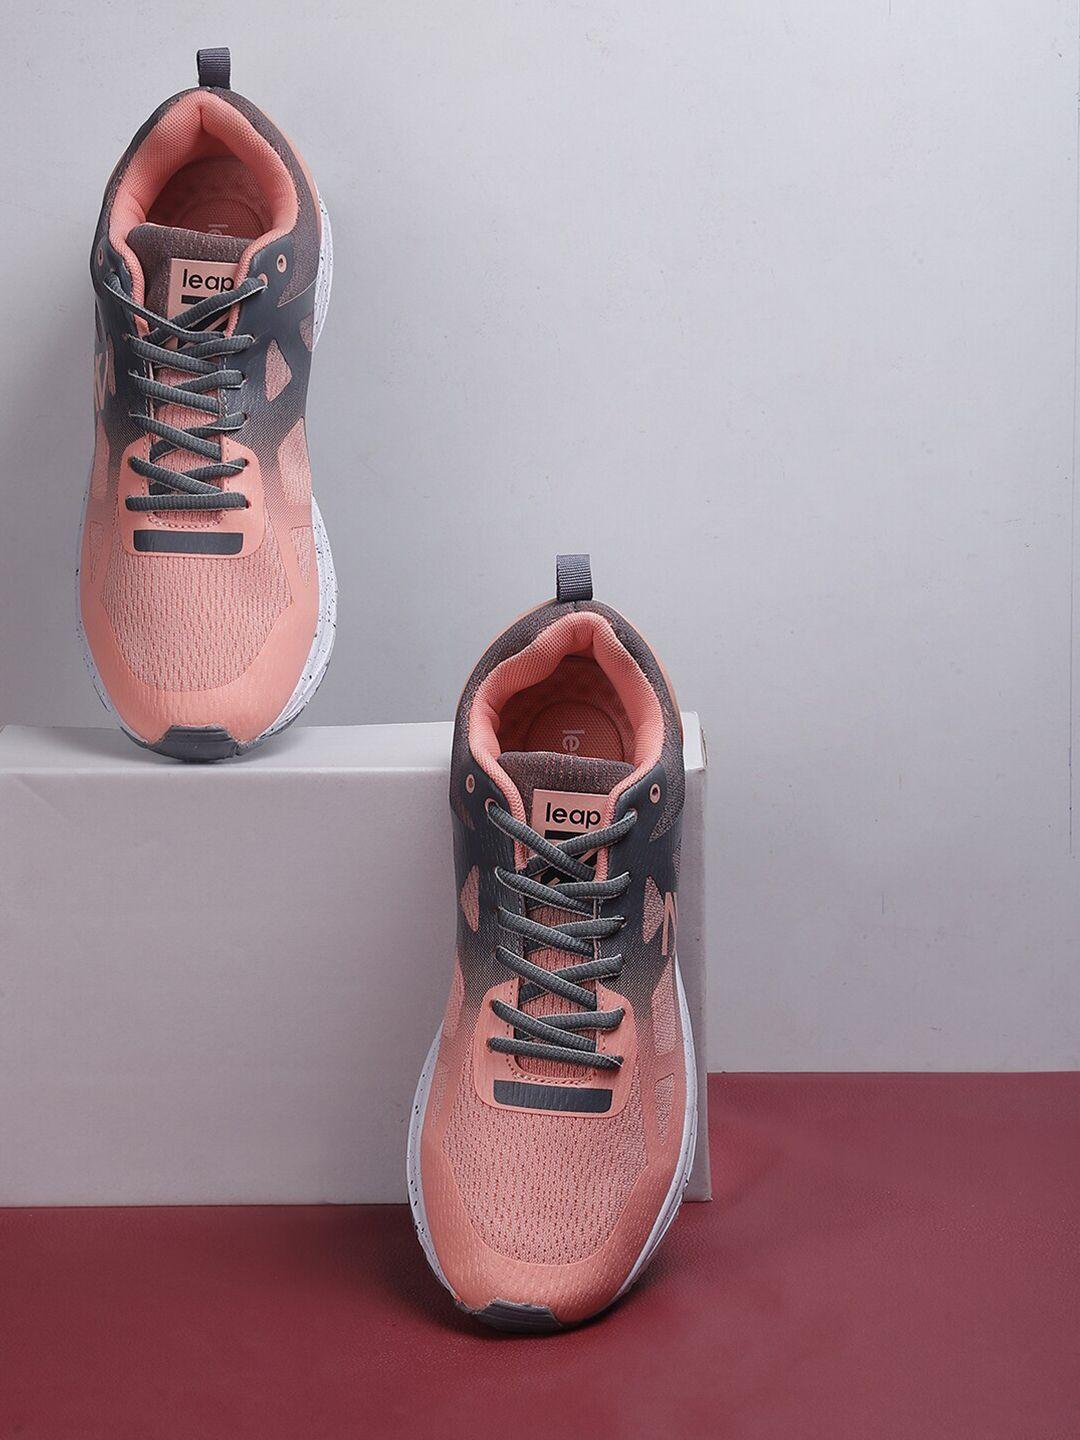 liberty-women-mesh-running-sports-shoes